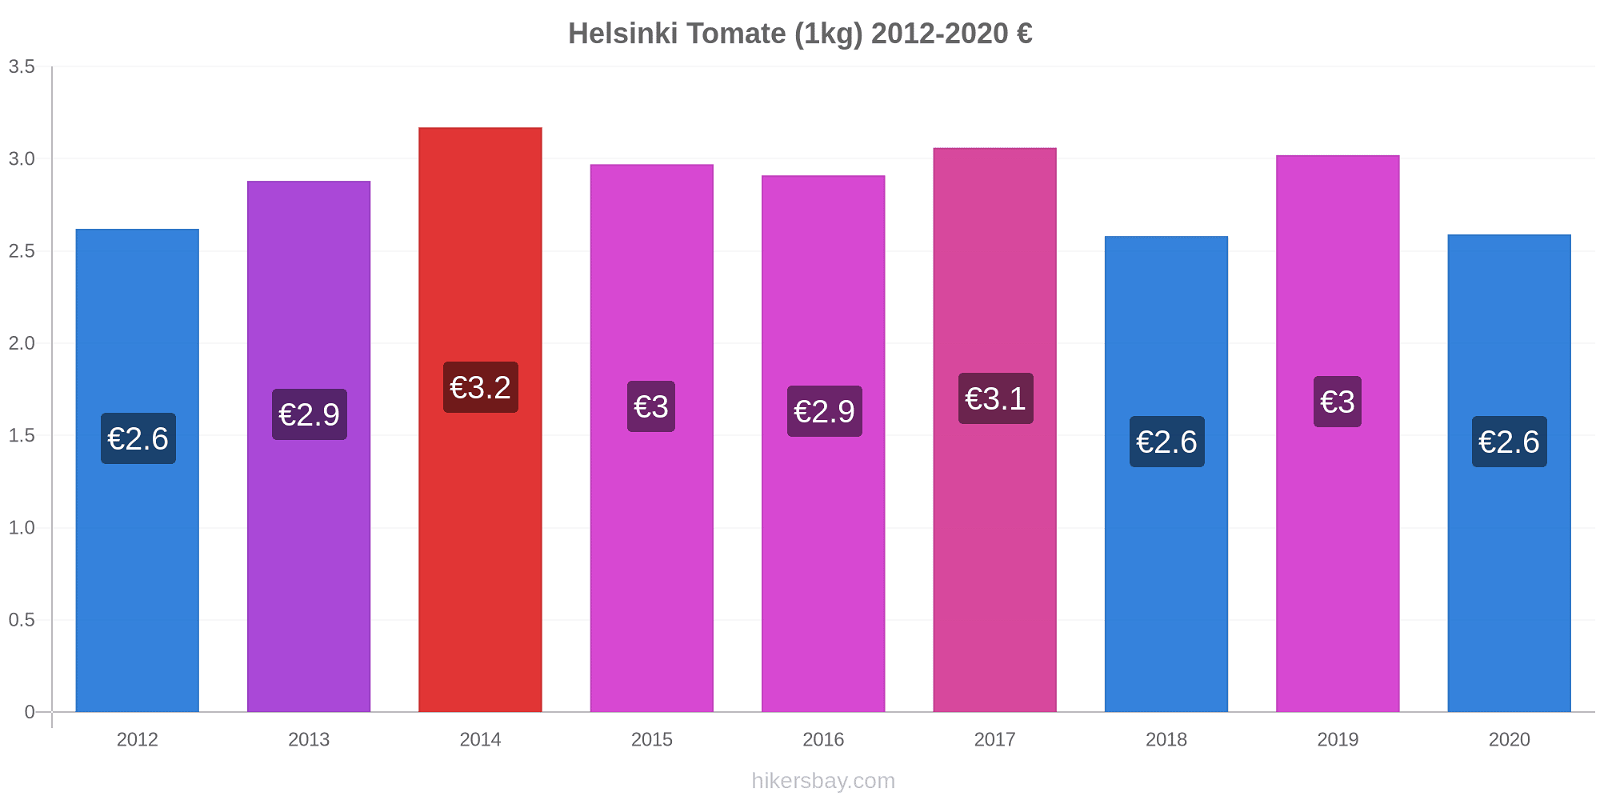 Helsinki cambios de precios Tomate (1kg) hikersbay.com